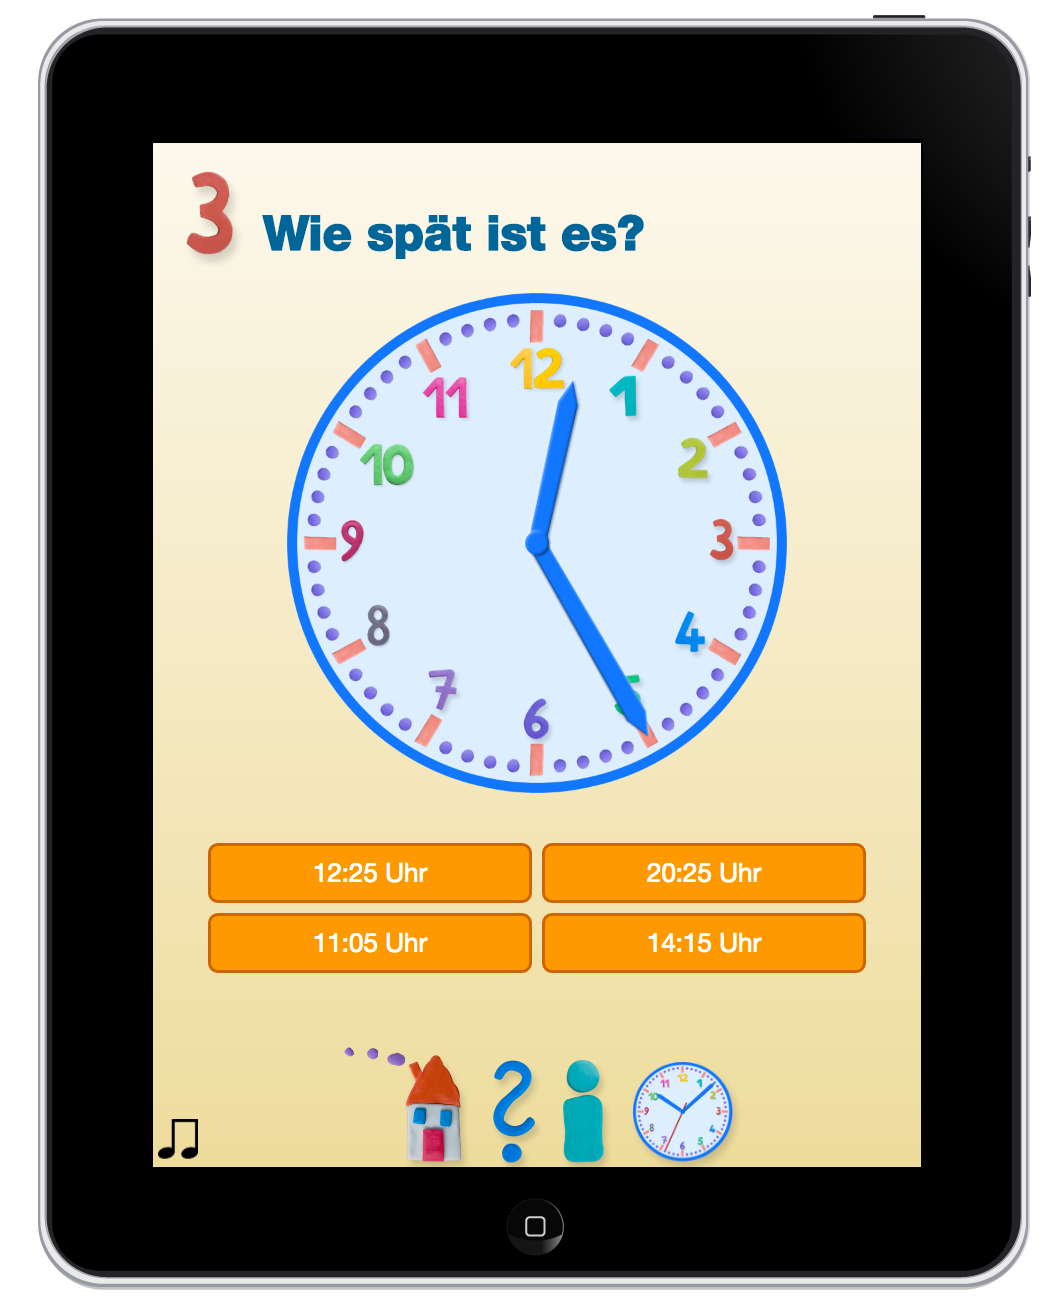 Uhrzeit lernen, Lernspiel App für iPad, iPhone, Android